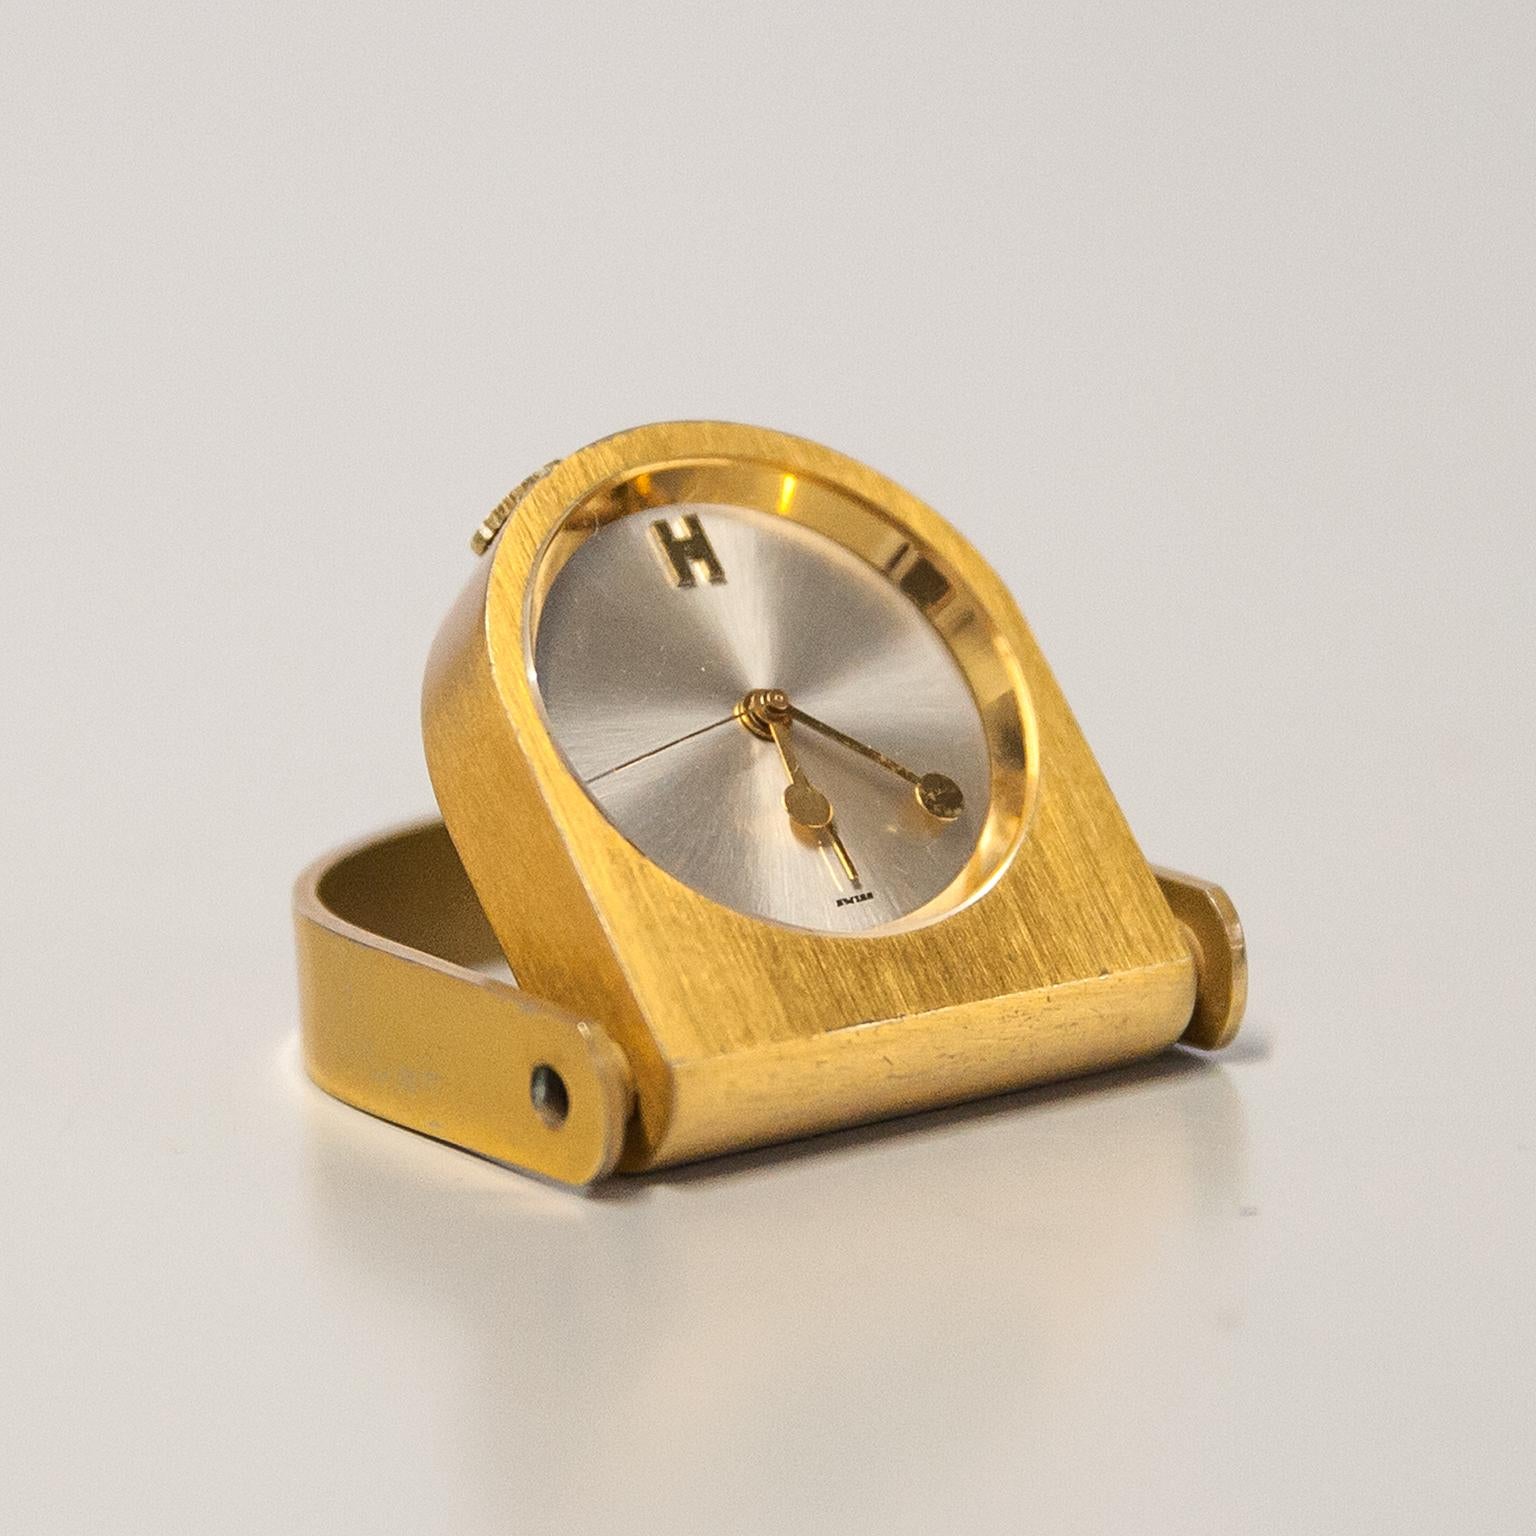 Hermès Clip Table Uhr in Messing mit einem Quarzwerk kommt mit der Originalbox, Lederetui und Stoffsäckchen.